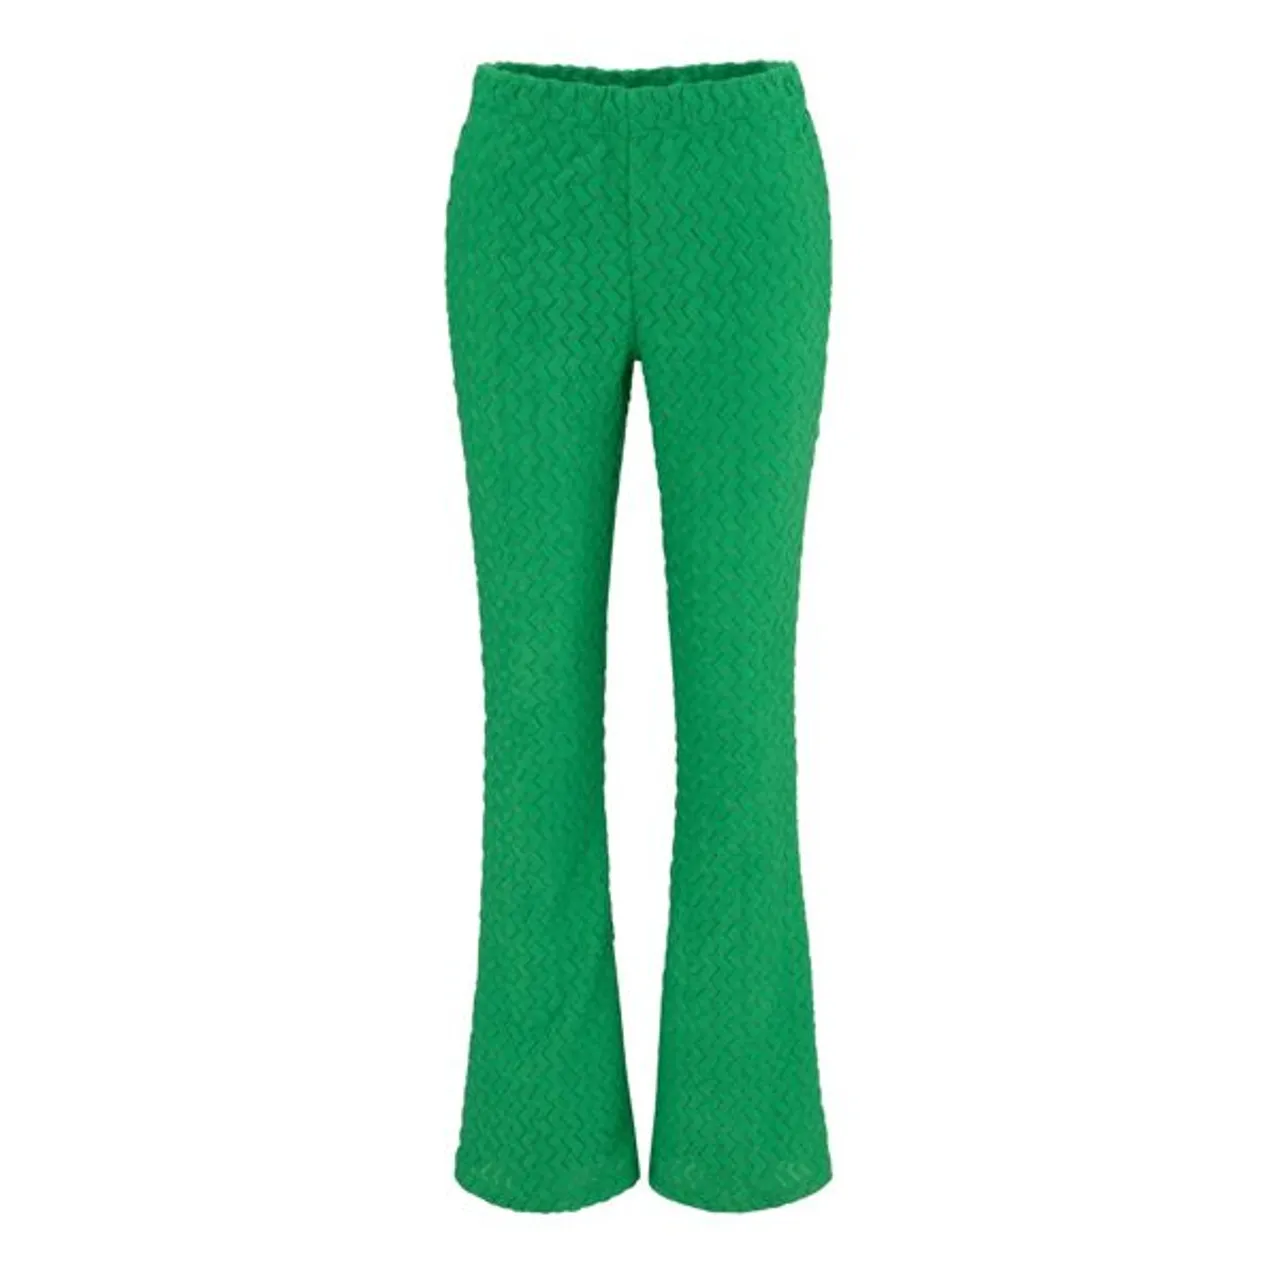 Schlupfhose ANISTON CASUAL Gr. 36, N-Gr, grün (smaragd) Damen Hosen Schlupfhosen